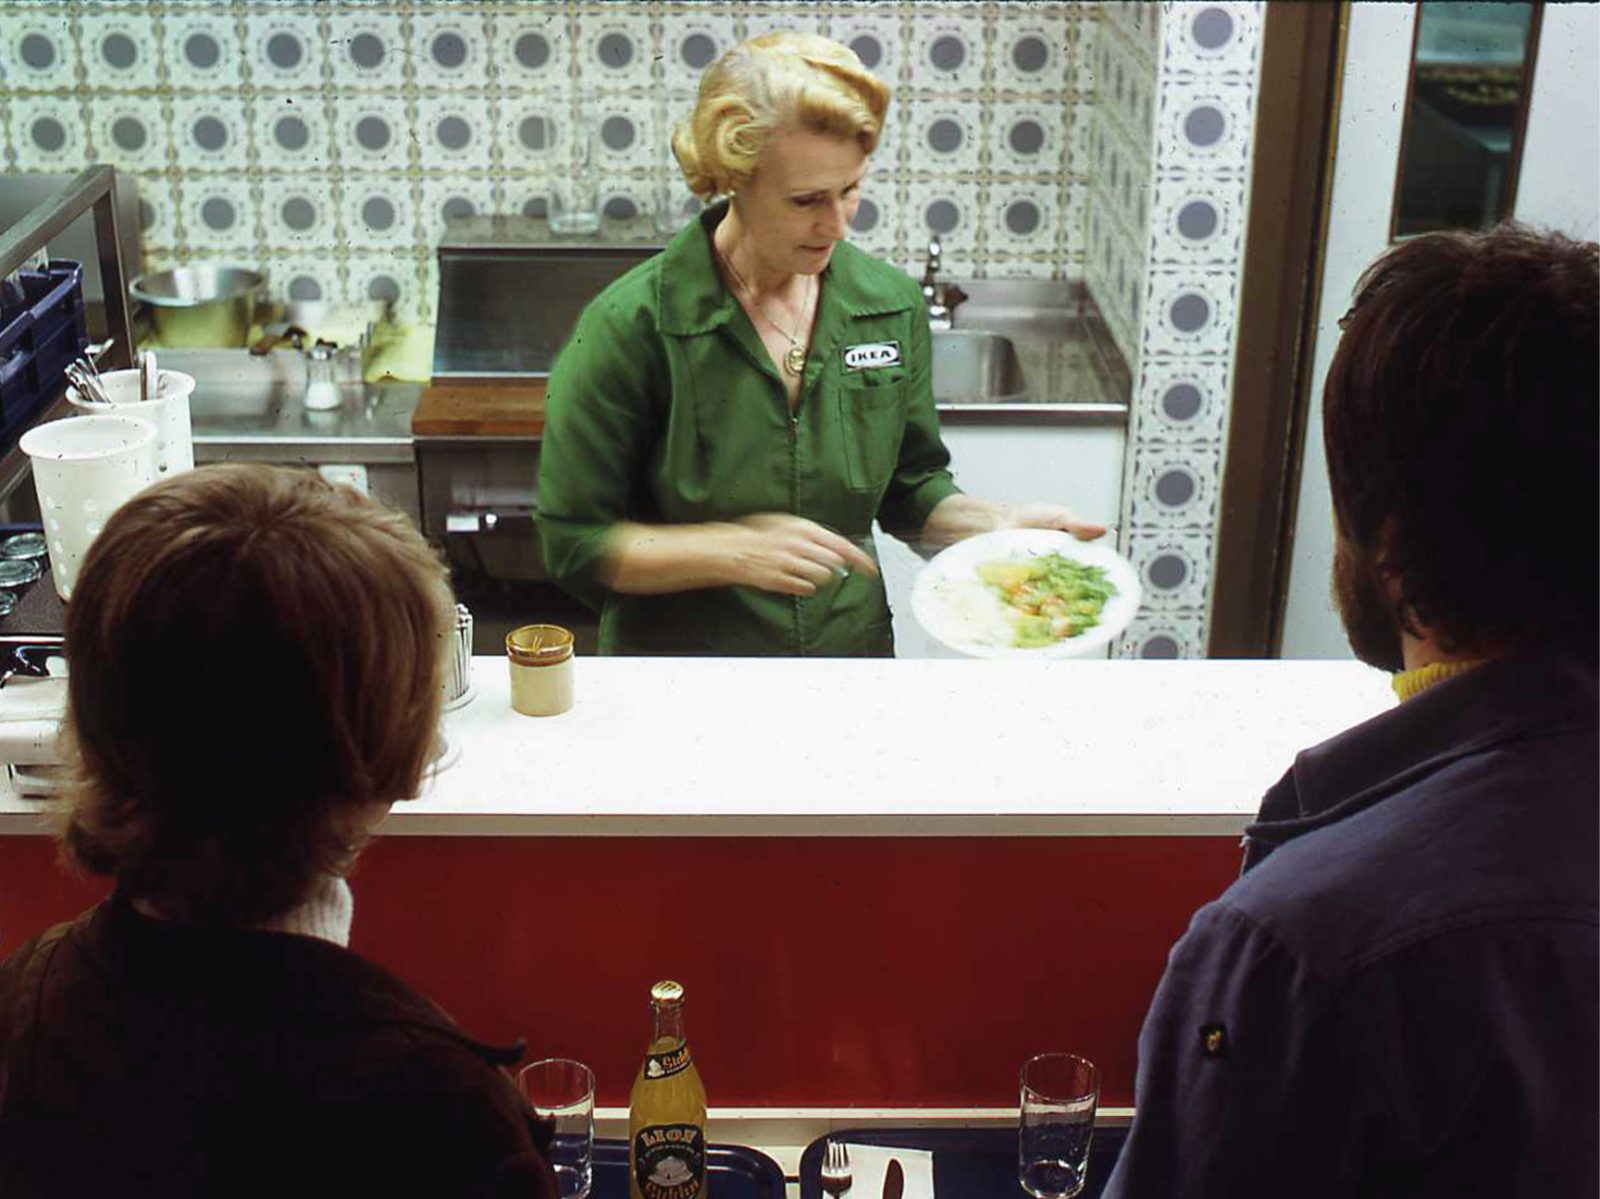 Ungt par vid självserveringsdisk väntar på sin mat som görs i ordning av blond kvinna i grön IKEA uniform från 1960-talet.